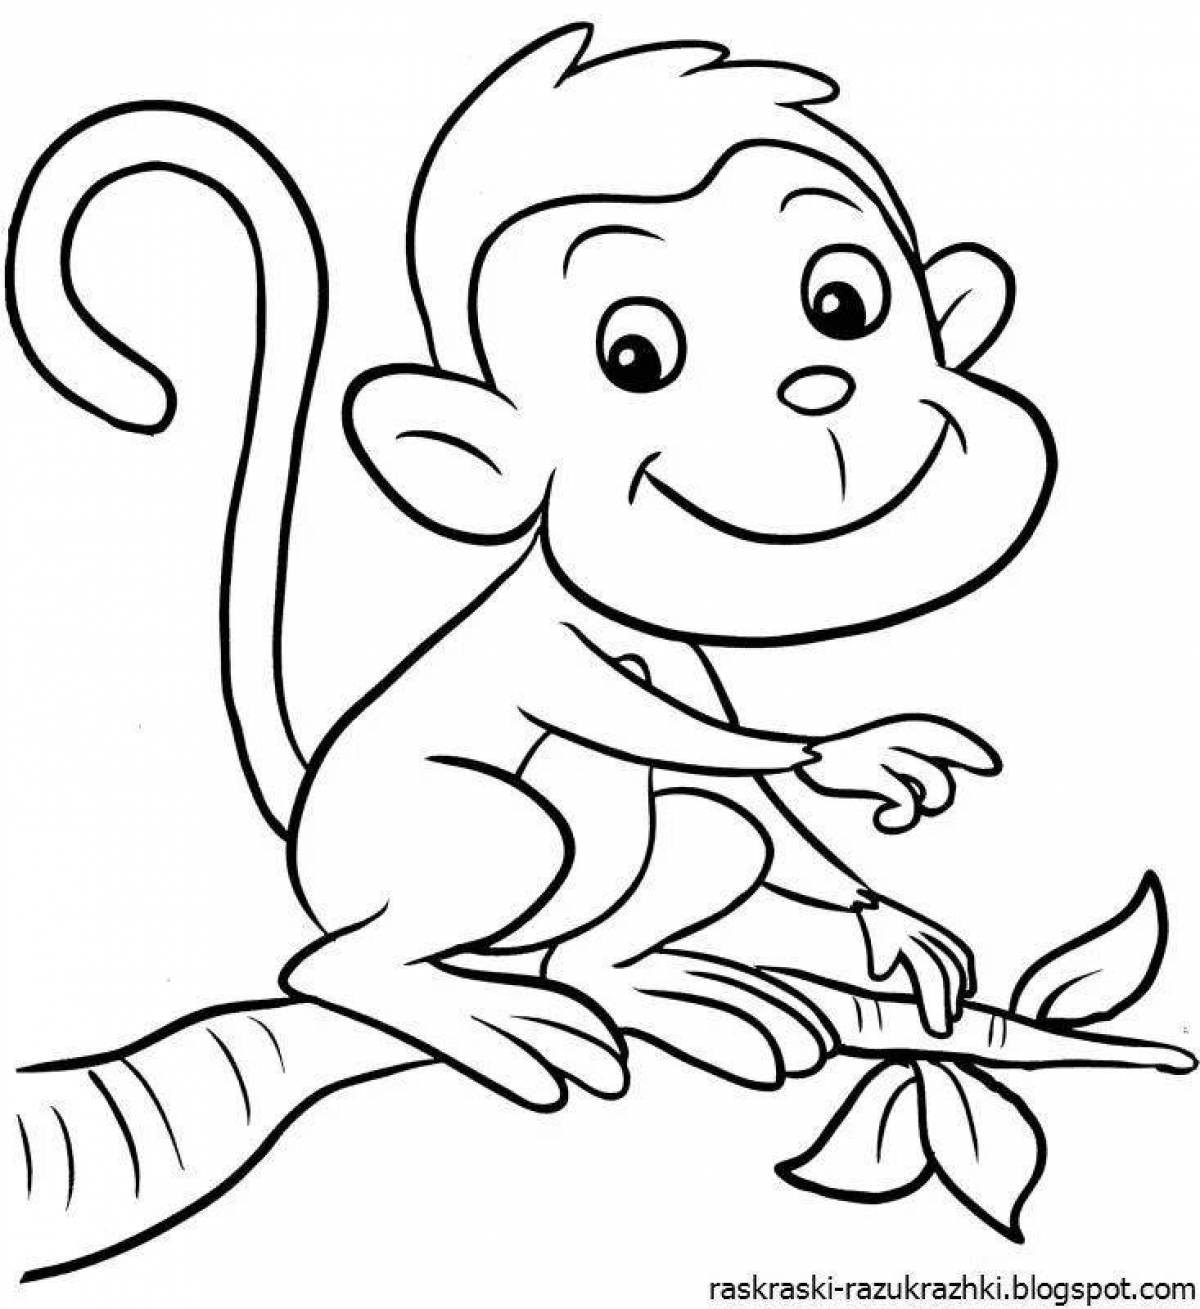 Веселая раскраска обезьяна